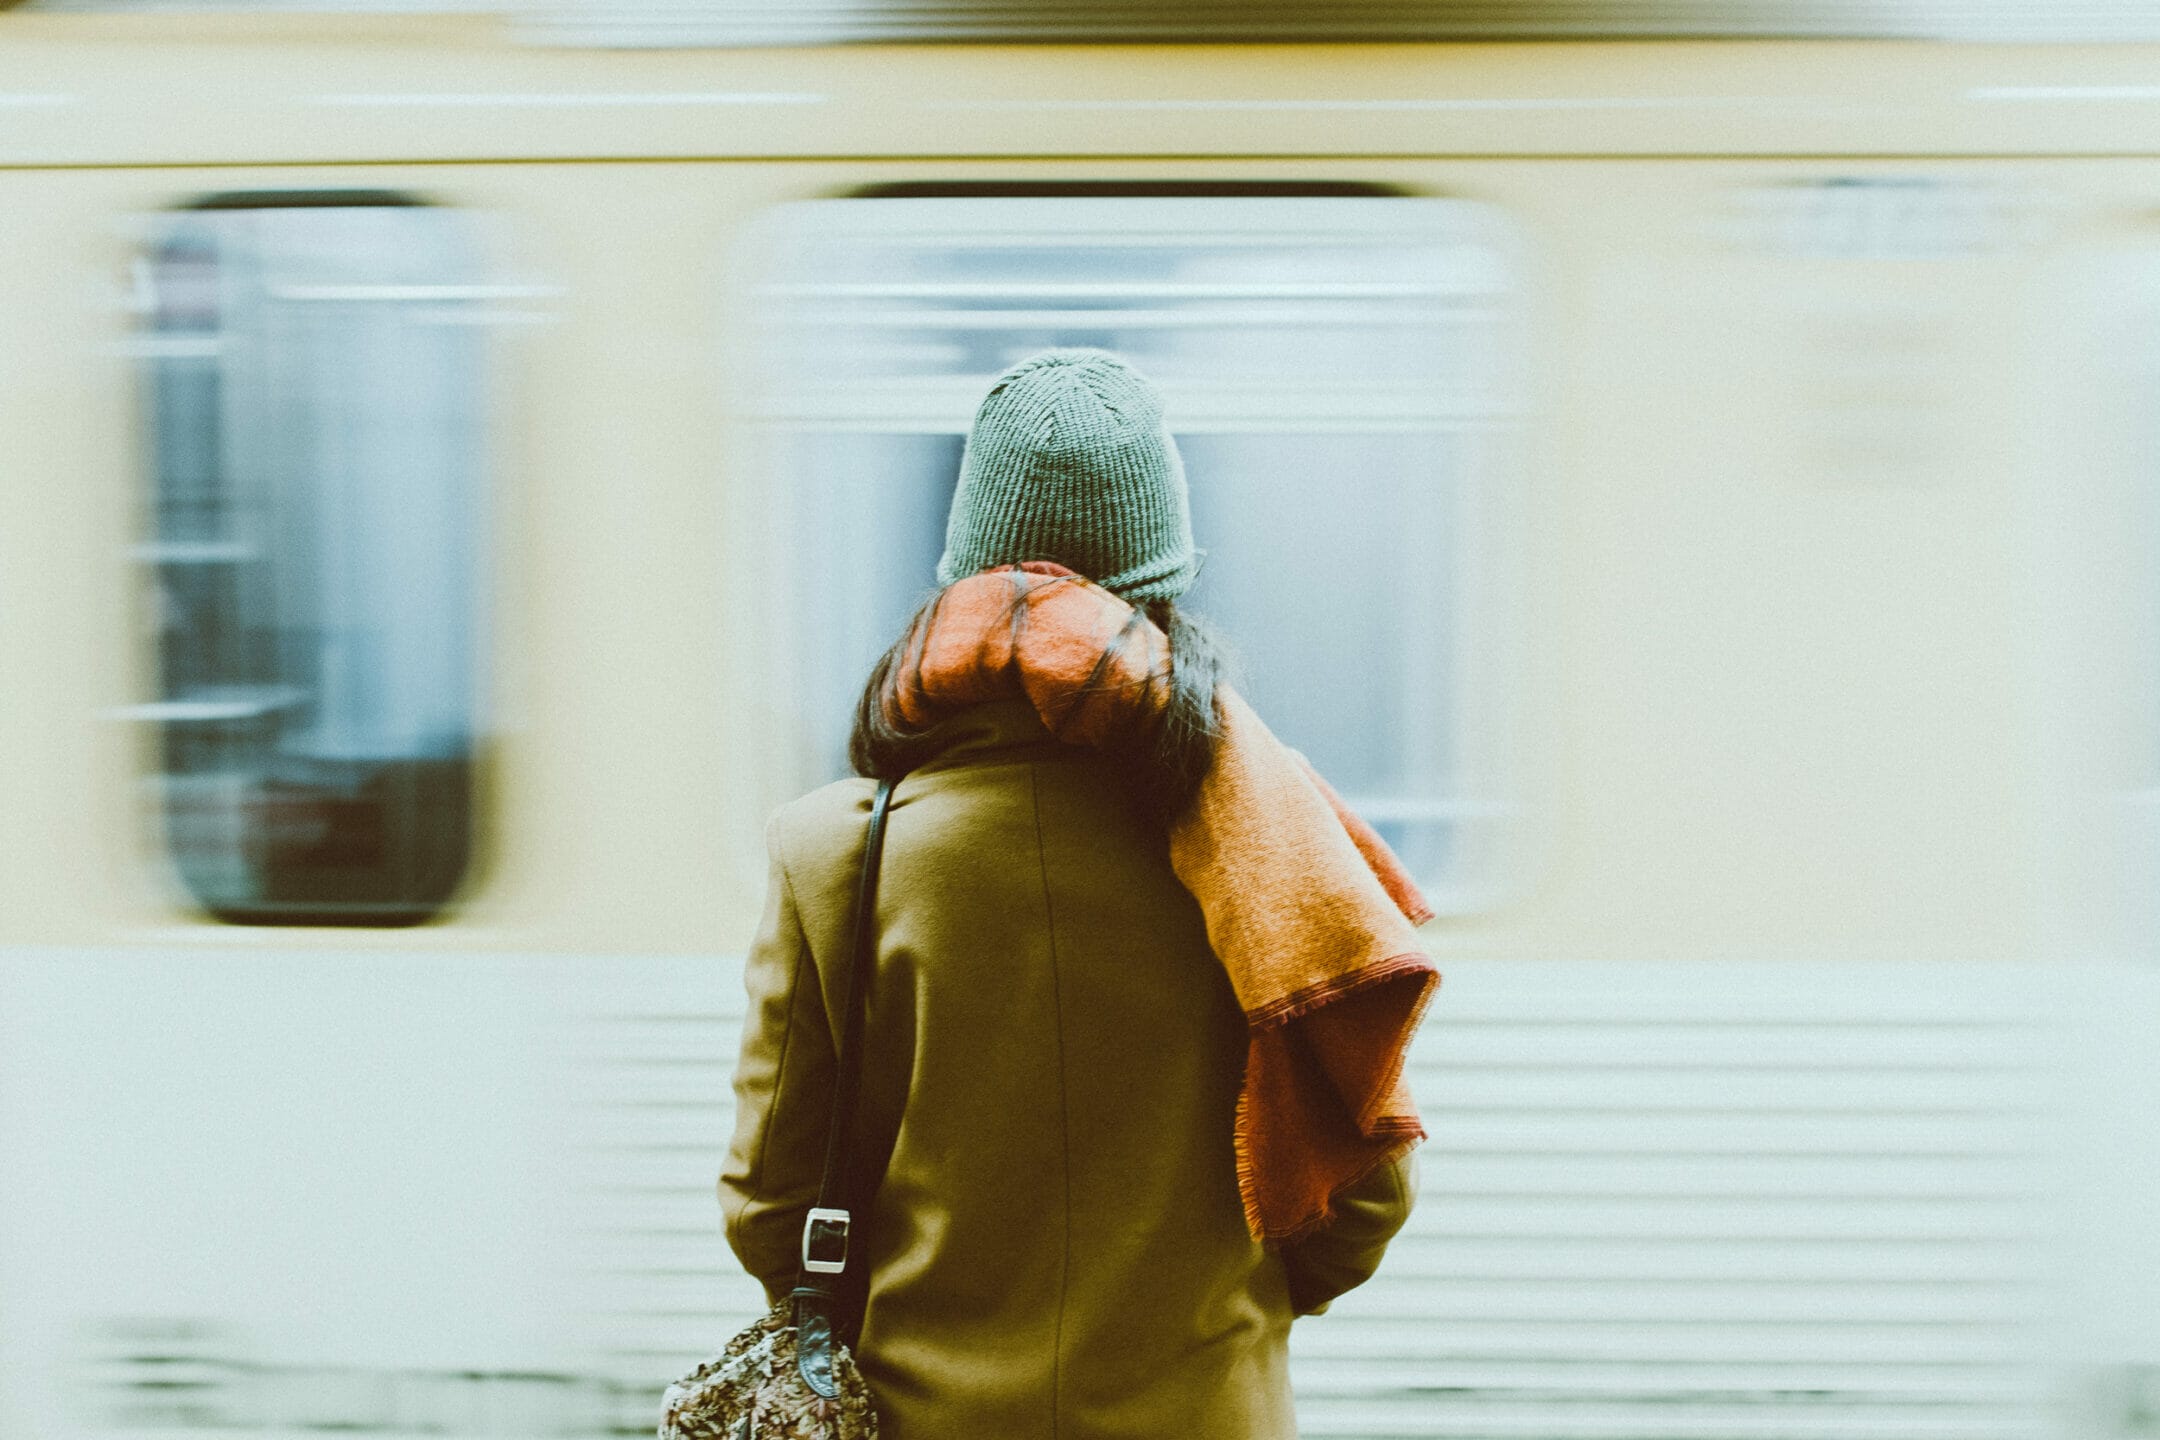 Se ve a una mujer de espaldas mientras un tren subterráneo llega frente a ella. Lleva ropa de invierno y una bolsa de viaje.